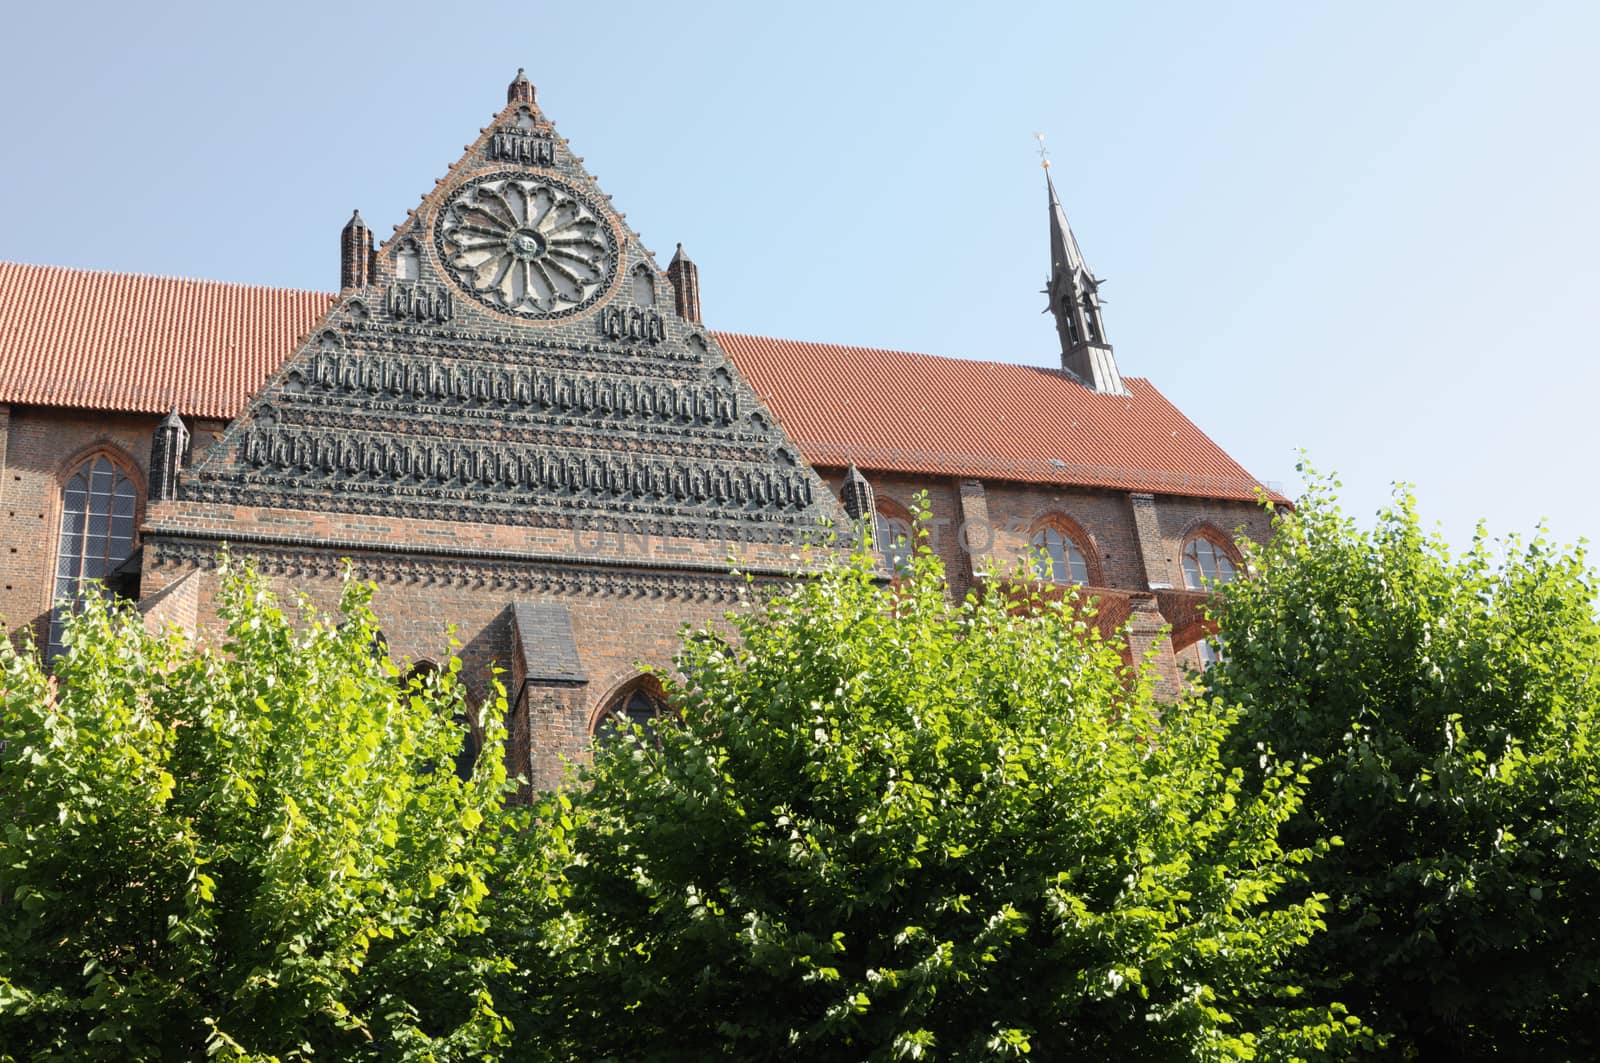 St. Nikolai Church in Wismar, Germany.